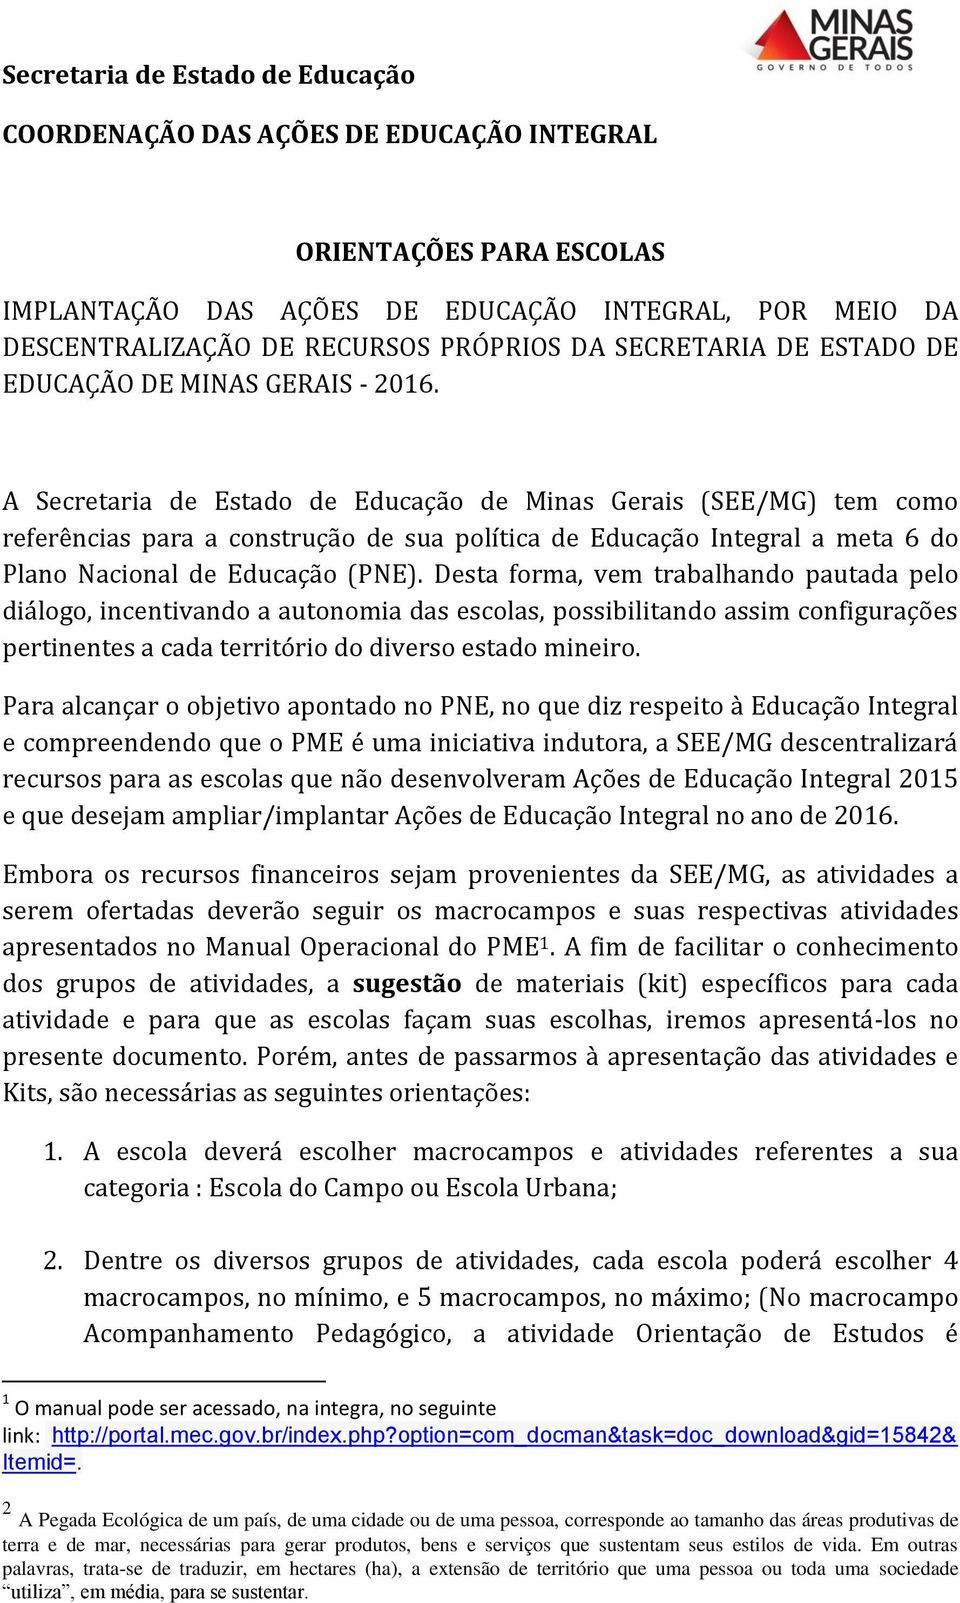 A Secretaria de Estado de Educação de Minas Gerais (SEE/MG) tem como referências para a construção de sua política de Educação Integral a meta 6 do Plano Nacional de Educação (PNE).